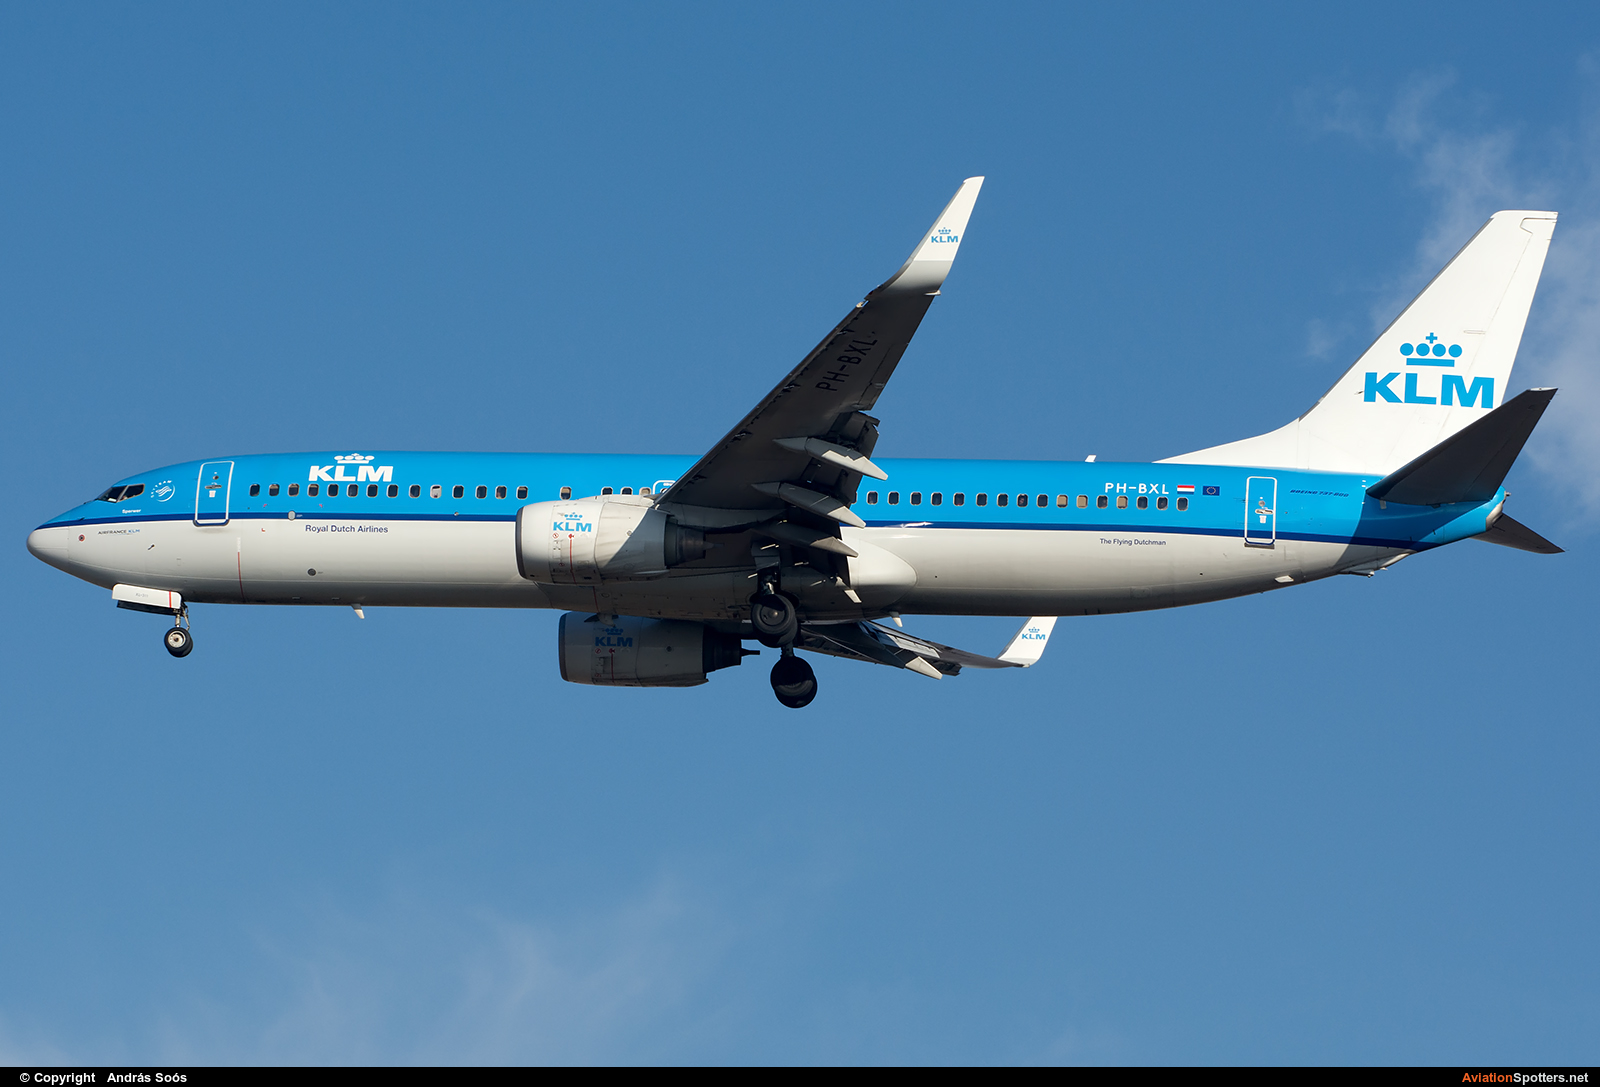 KLM  -  737-800  (PH-BXL) By András Soós (sas1965)